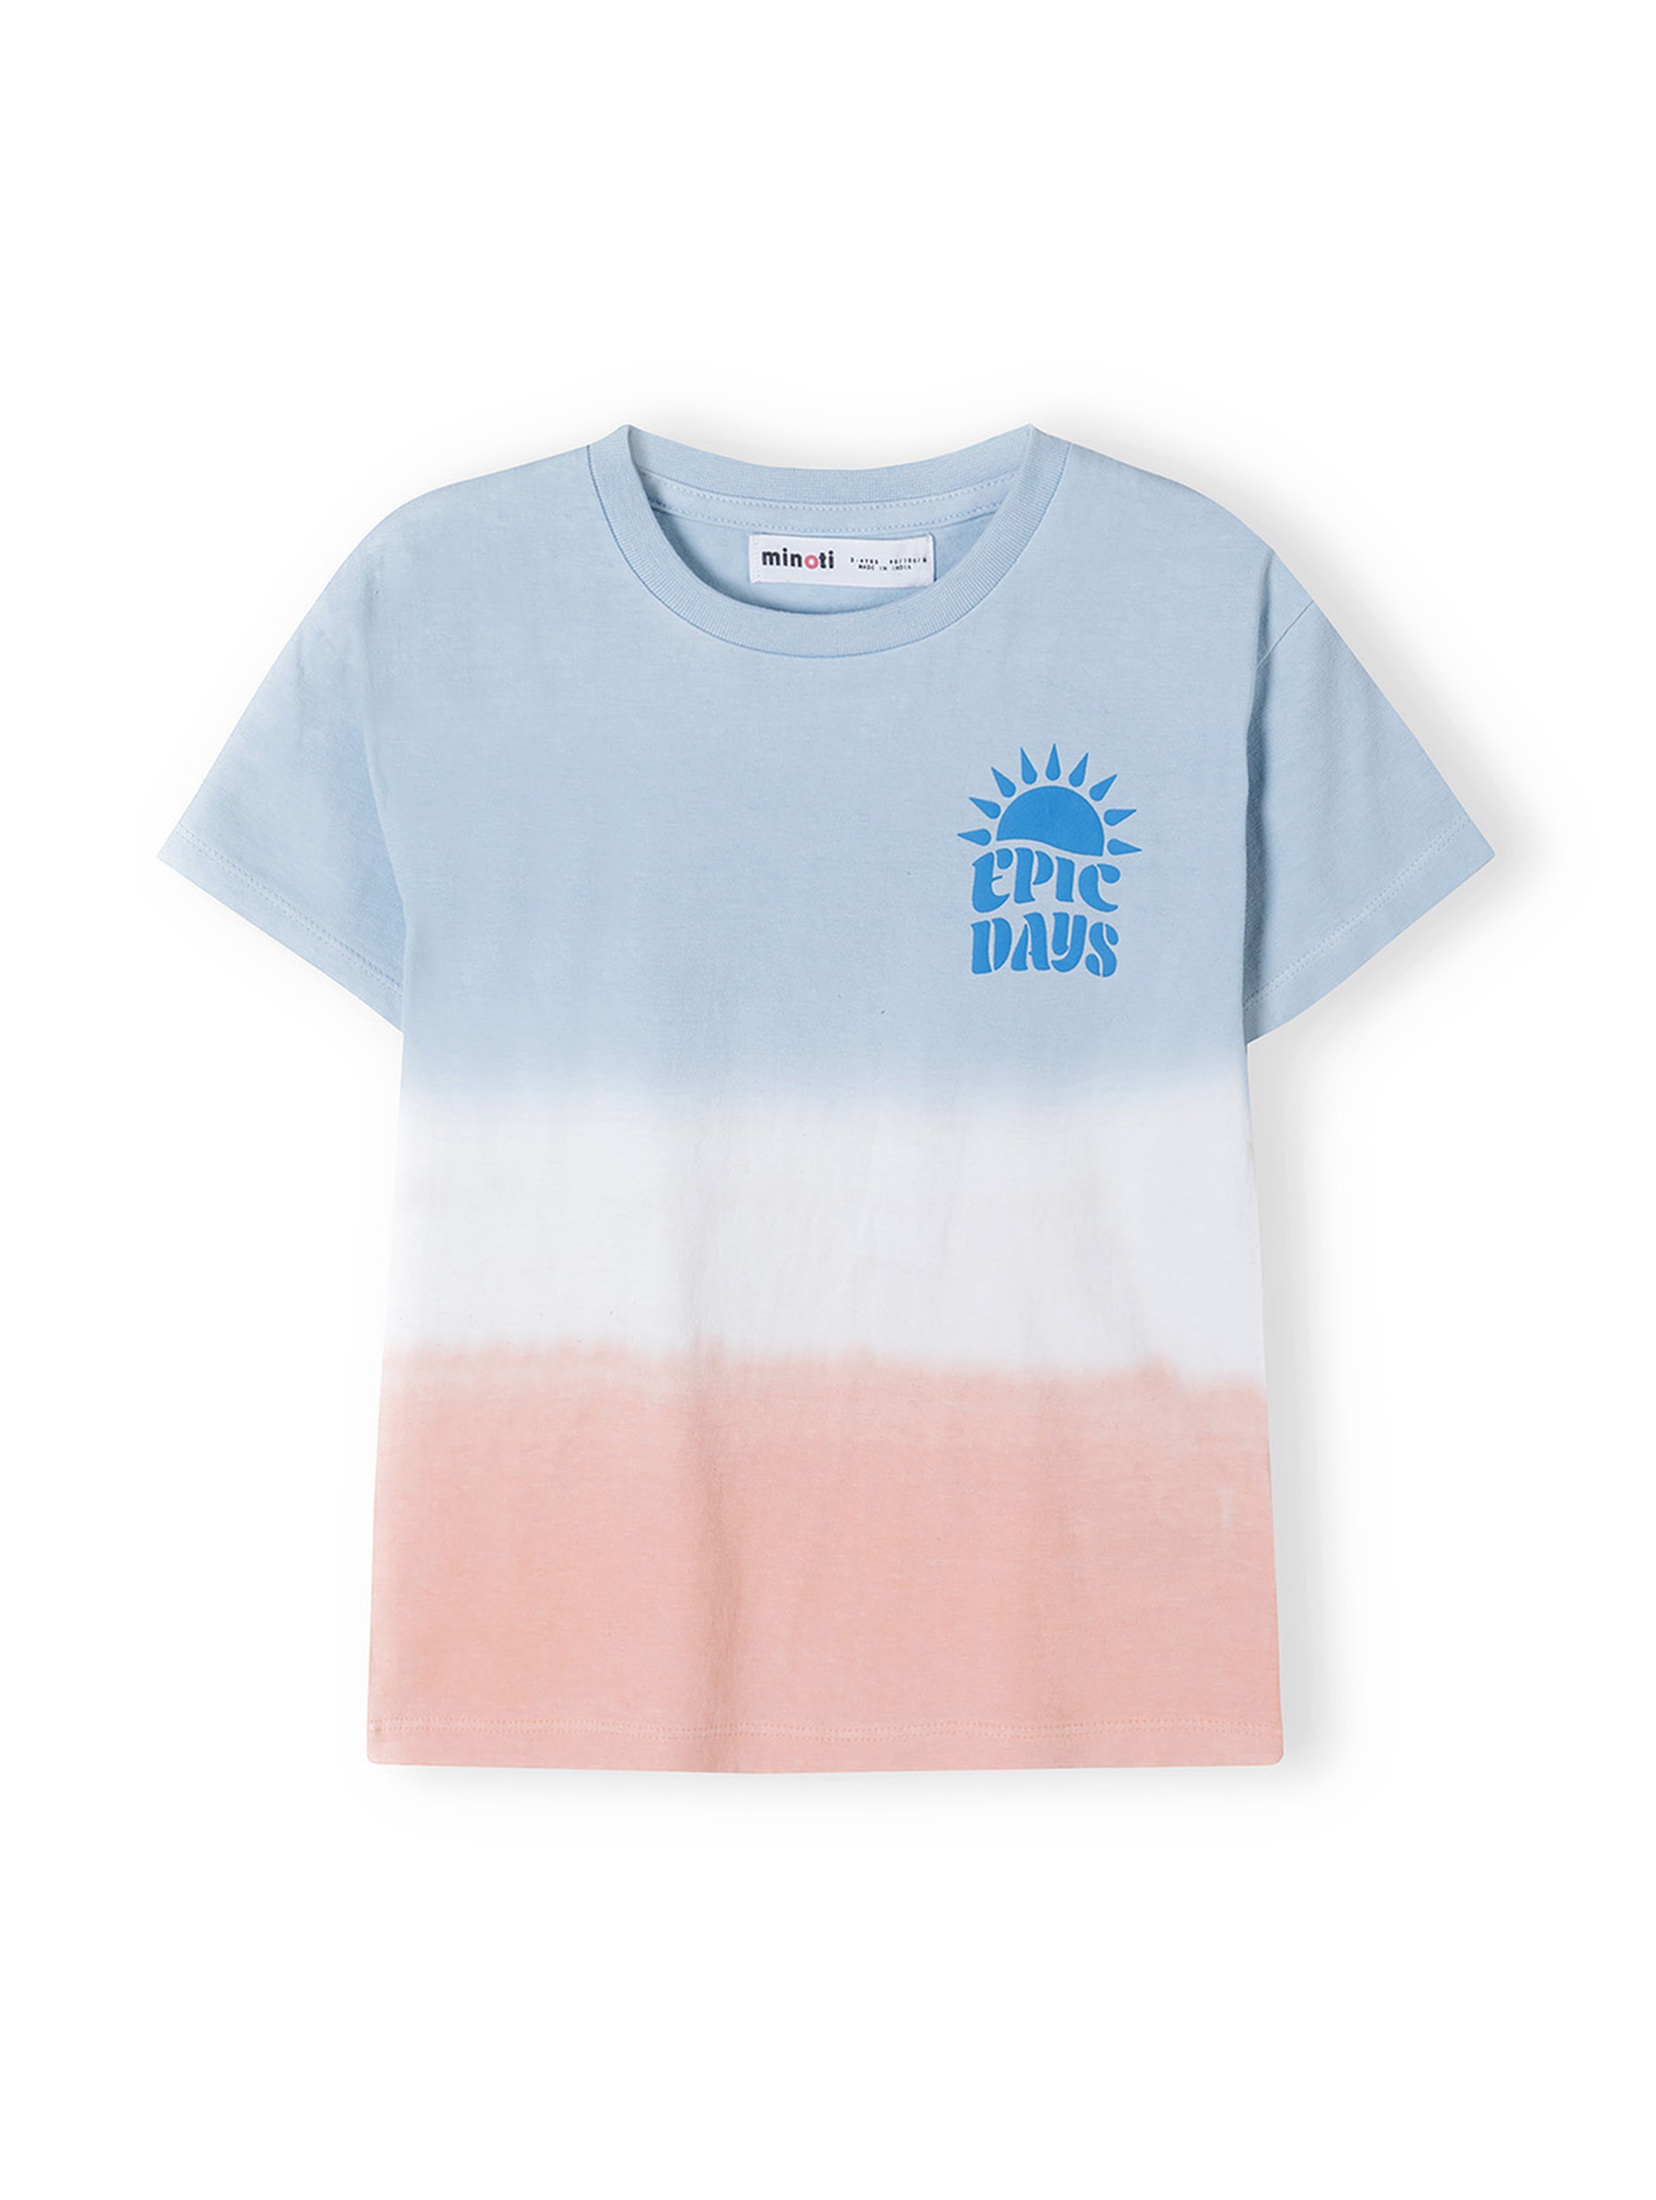 Bawełniany t-shirt dla niemowlaka- Epic days